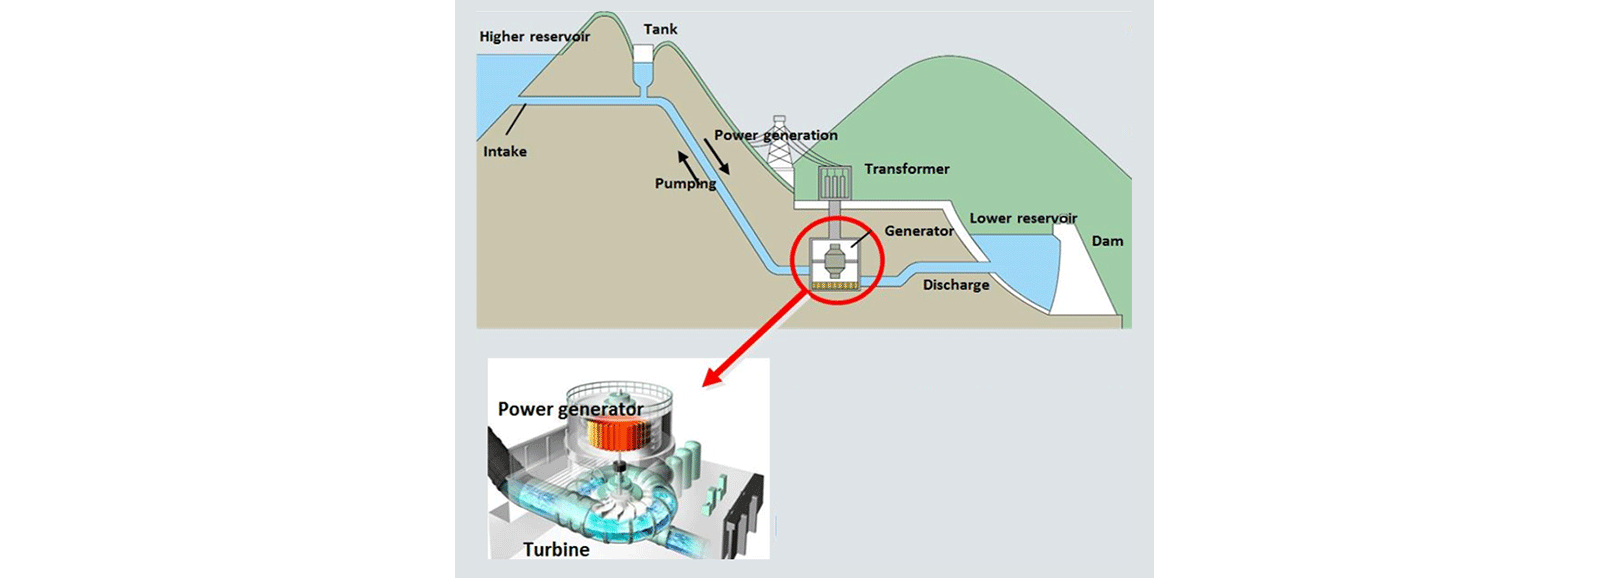 Central hidroeléctrica: generación de energía mediante bombeo